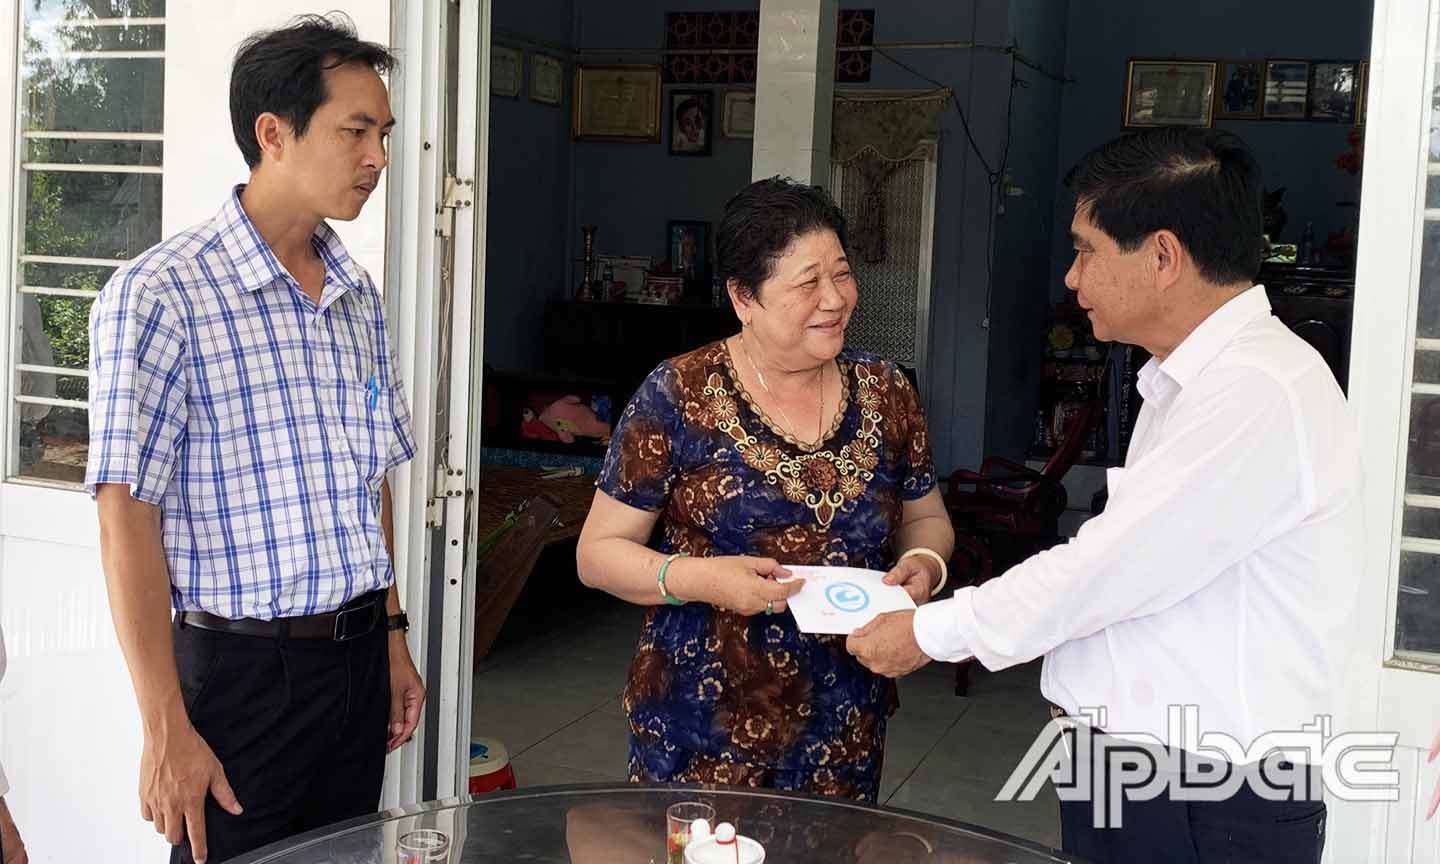 Đồng chí Nguyễn Văn Nhã cùng các thành viên trong đoàn đến thăm và tặng quà gia đình bà Lê Thị Tuyết Hoa, bệnh binh 61%, ấp Hậu Phú 1, xã Hậu Mỹ Bắc A.